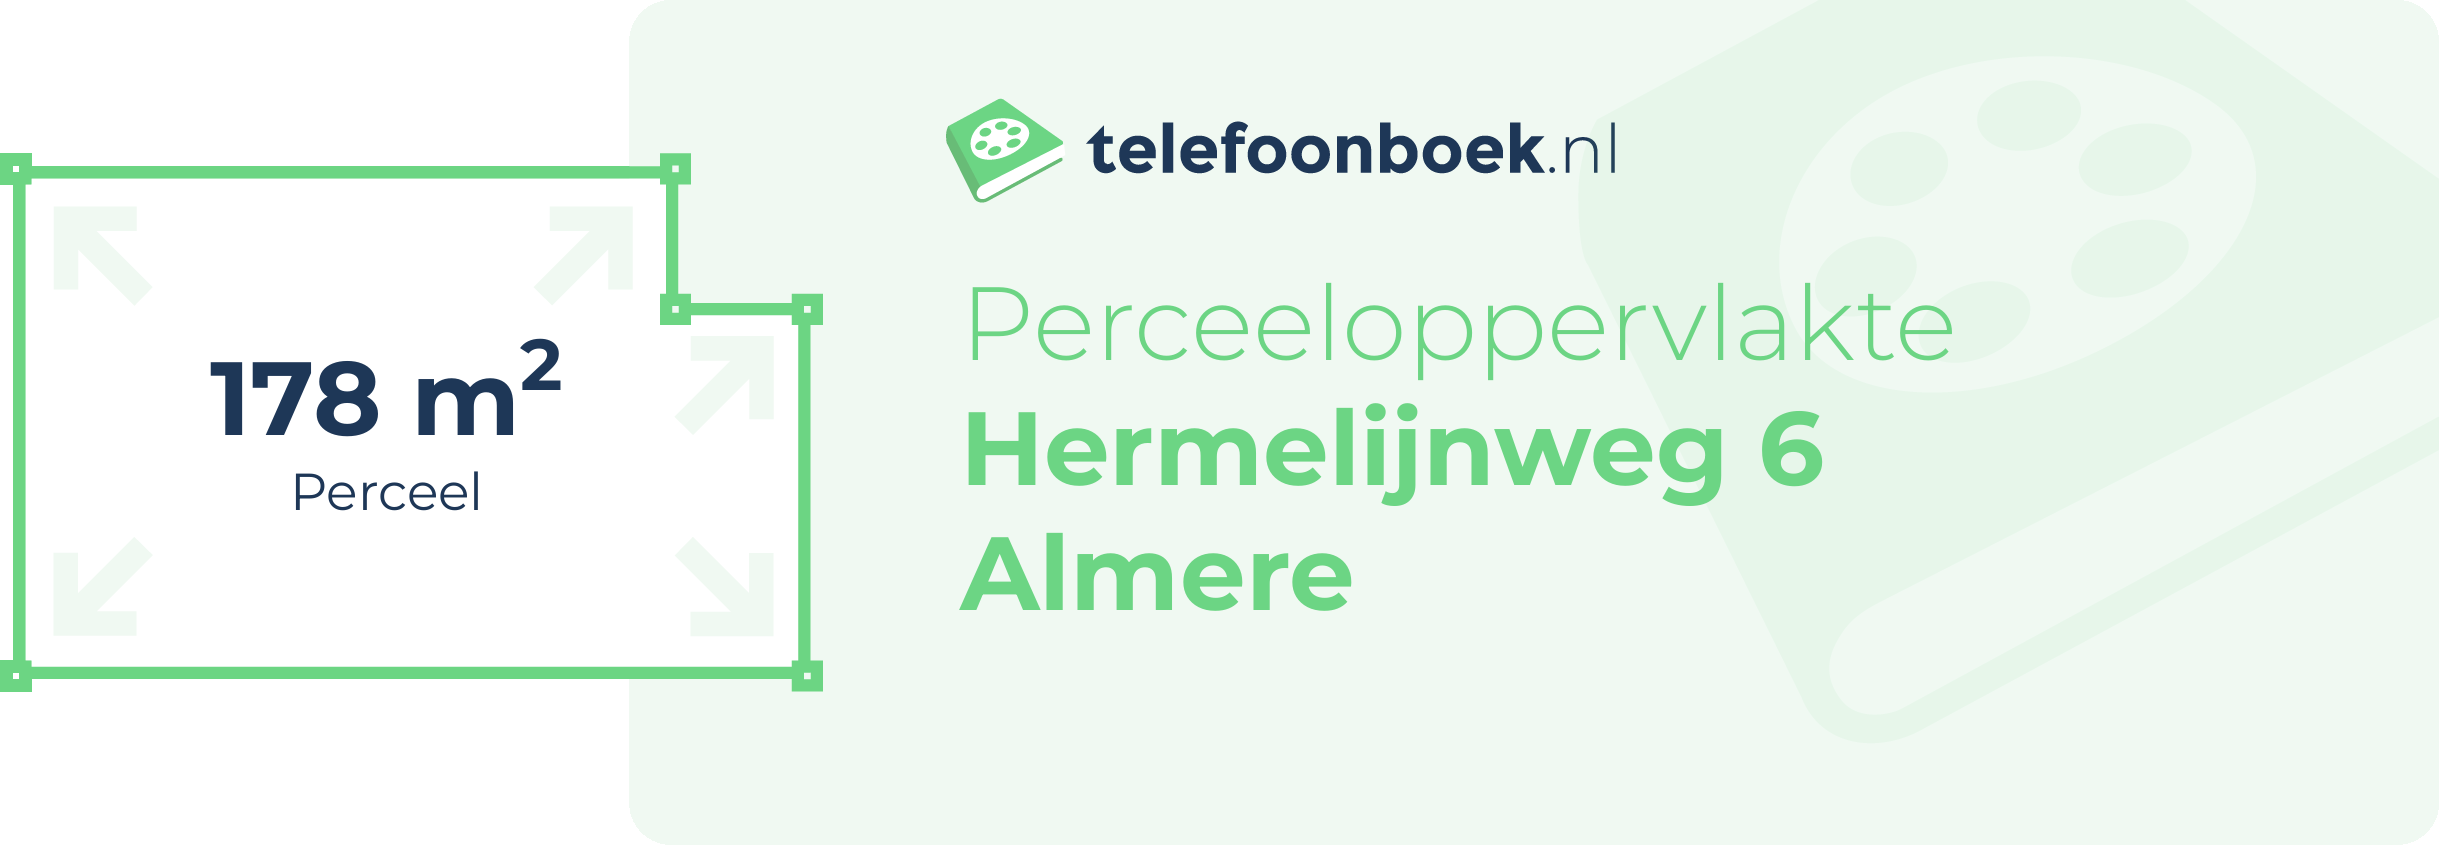 Perceeloppervlakte Hermelijnweg 6 Almere